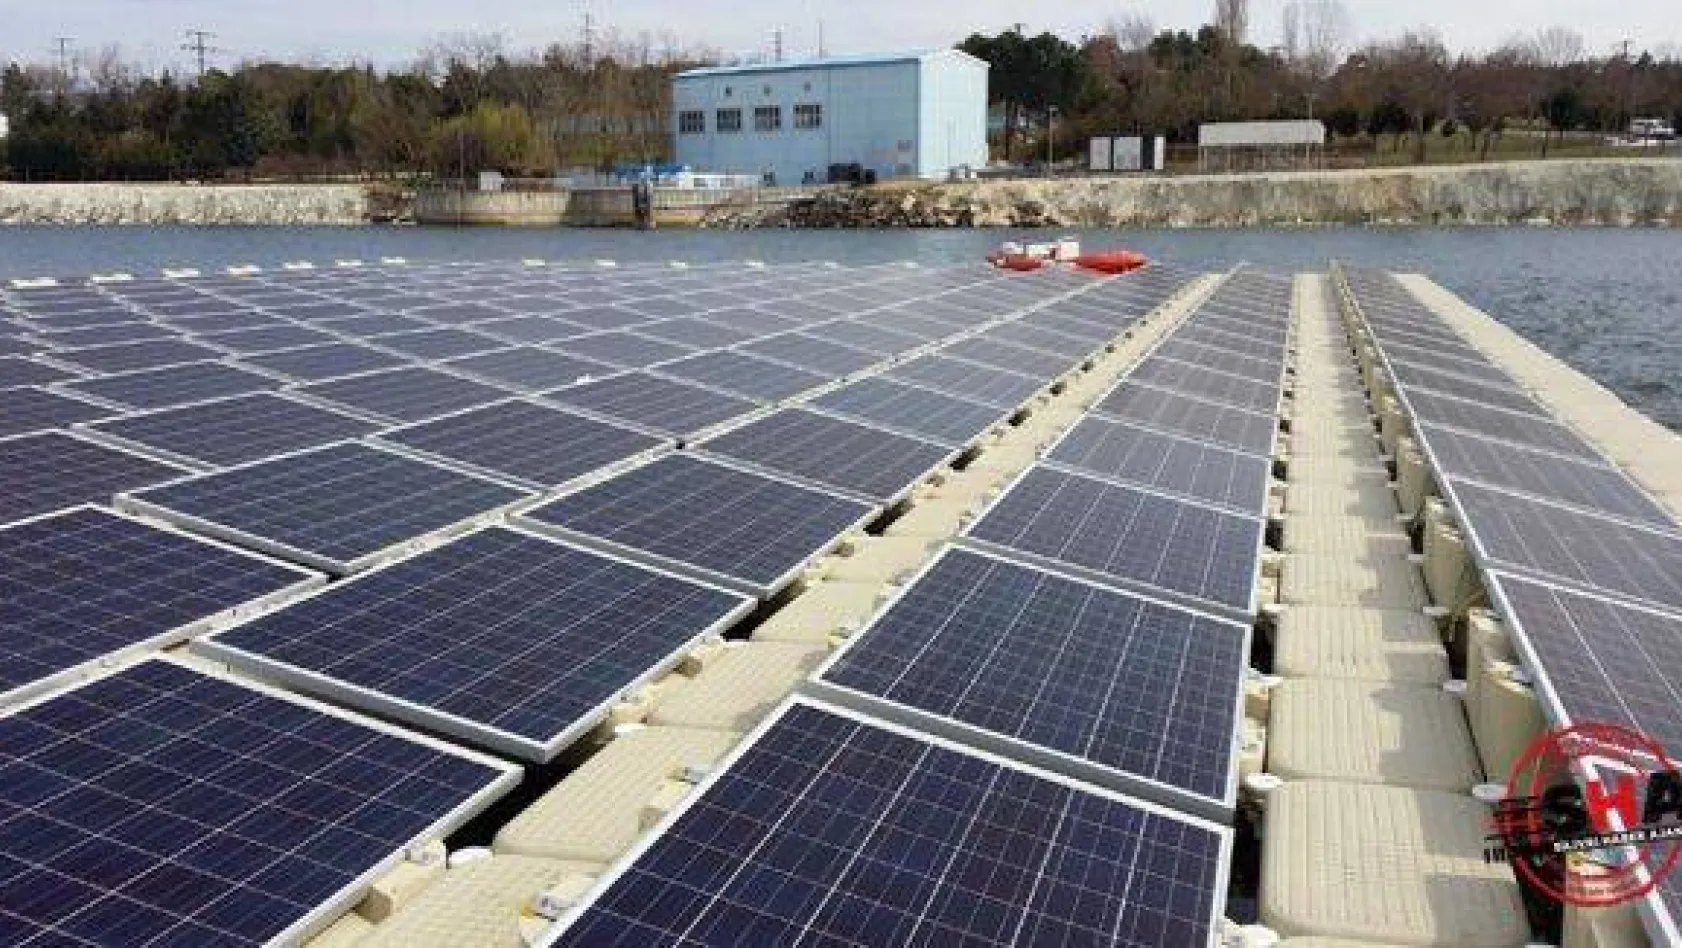 İBB Türkiye'nin ilk yüzer güneş enerji santralini kurdu